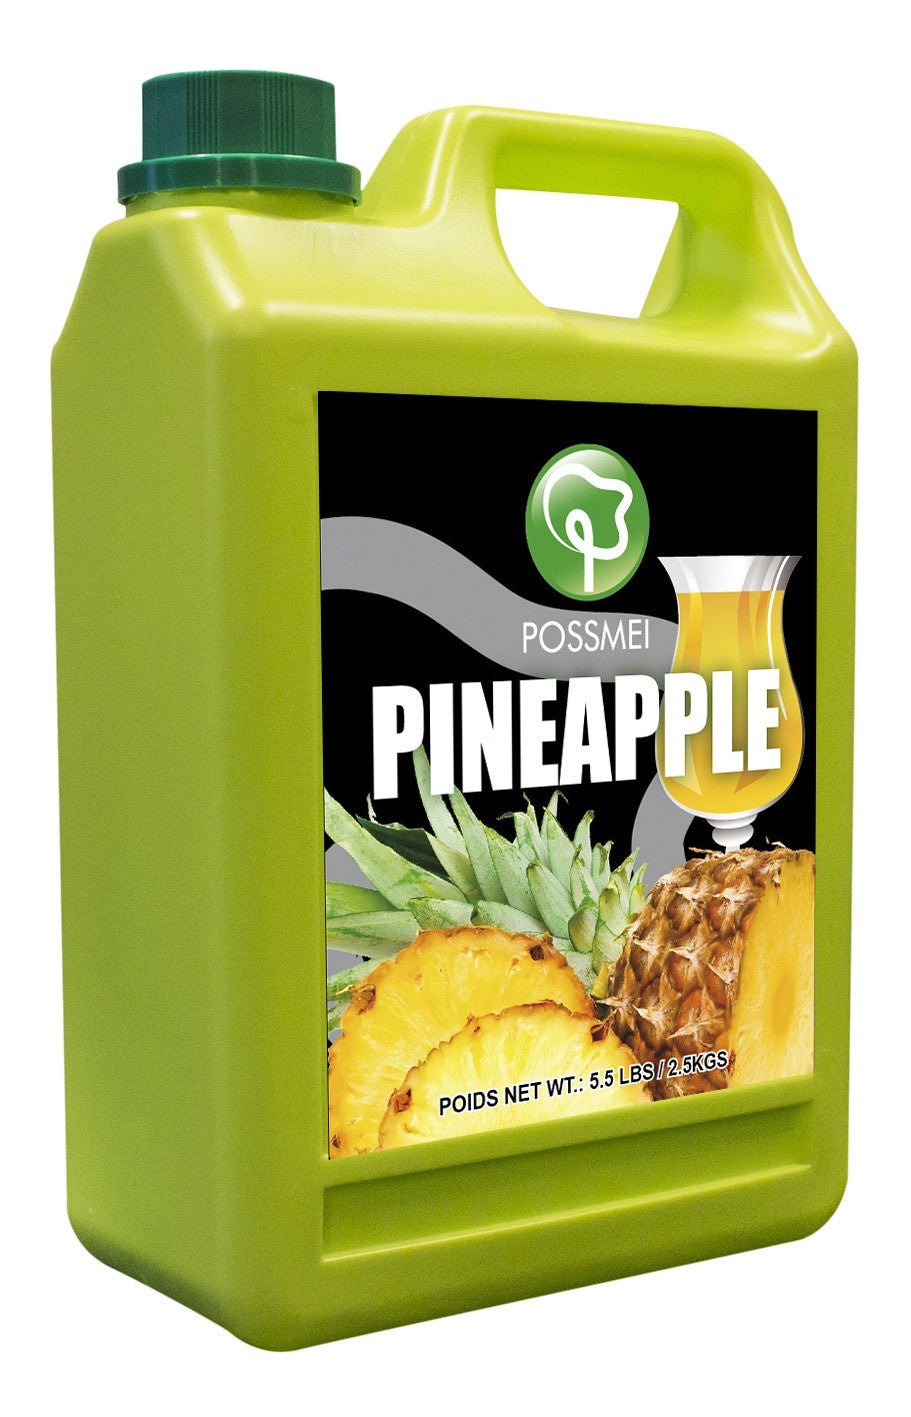 Possmei Pineapple Bubble Tea Juice